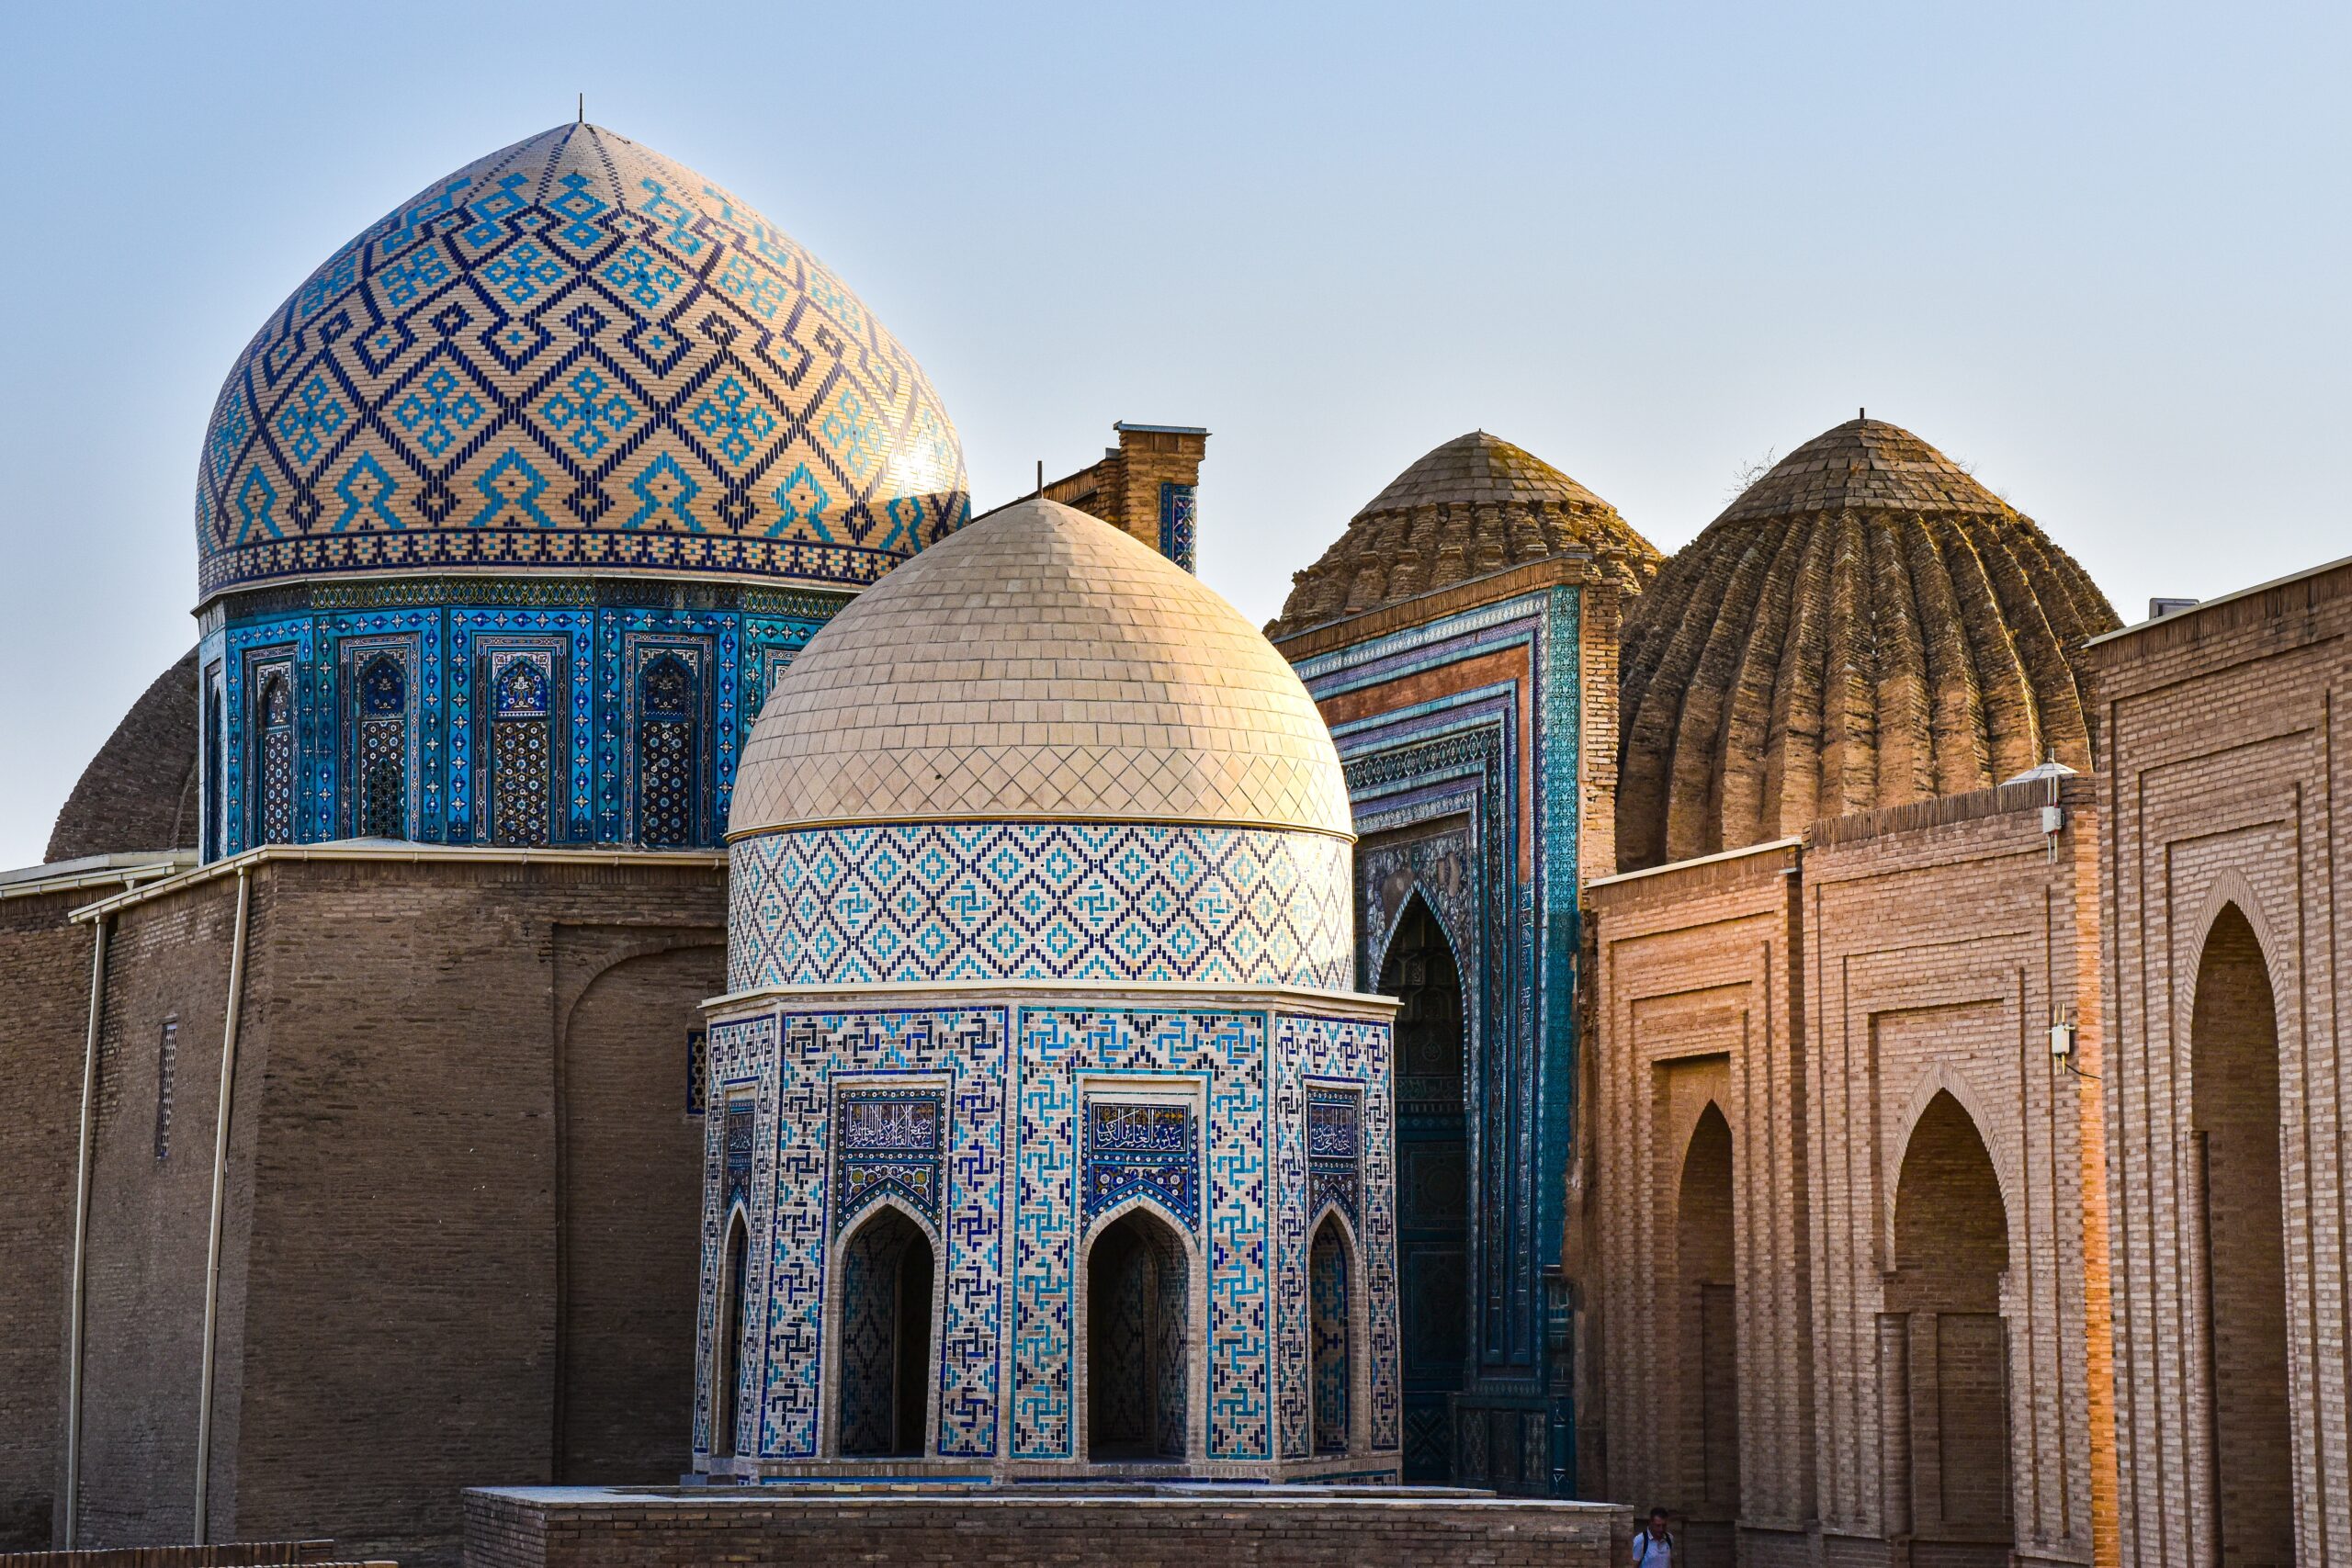 Samarkand, the Silk Road's #1 MICE destination